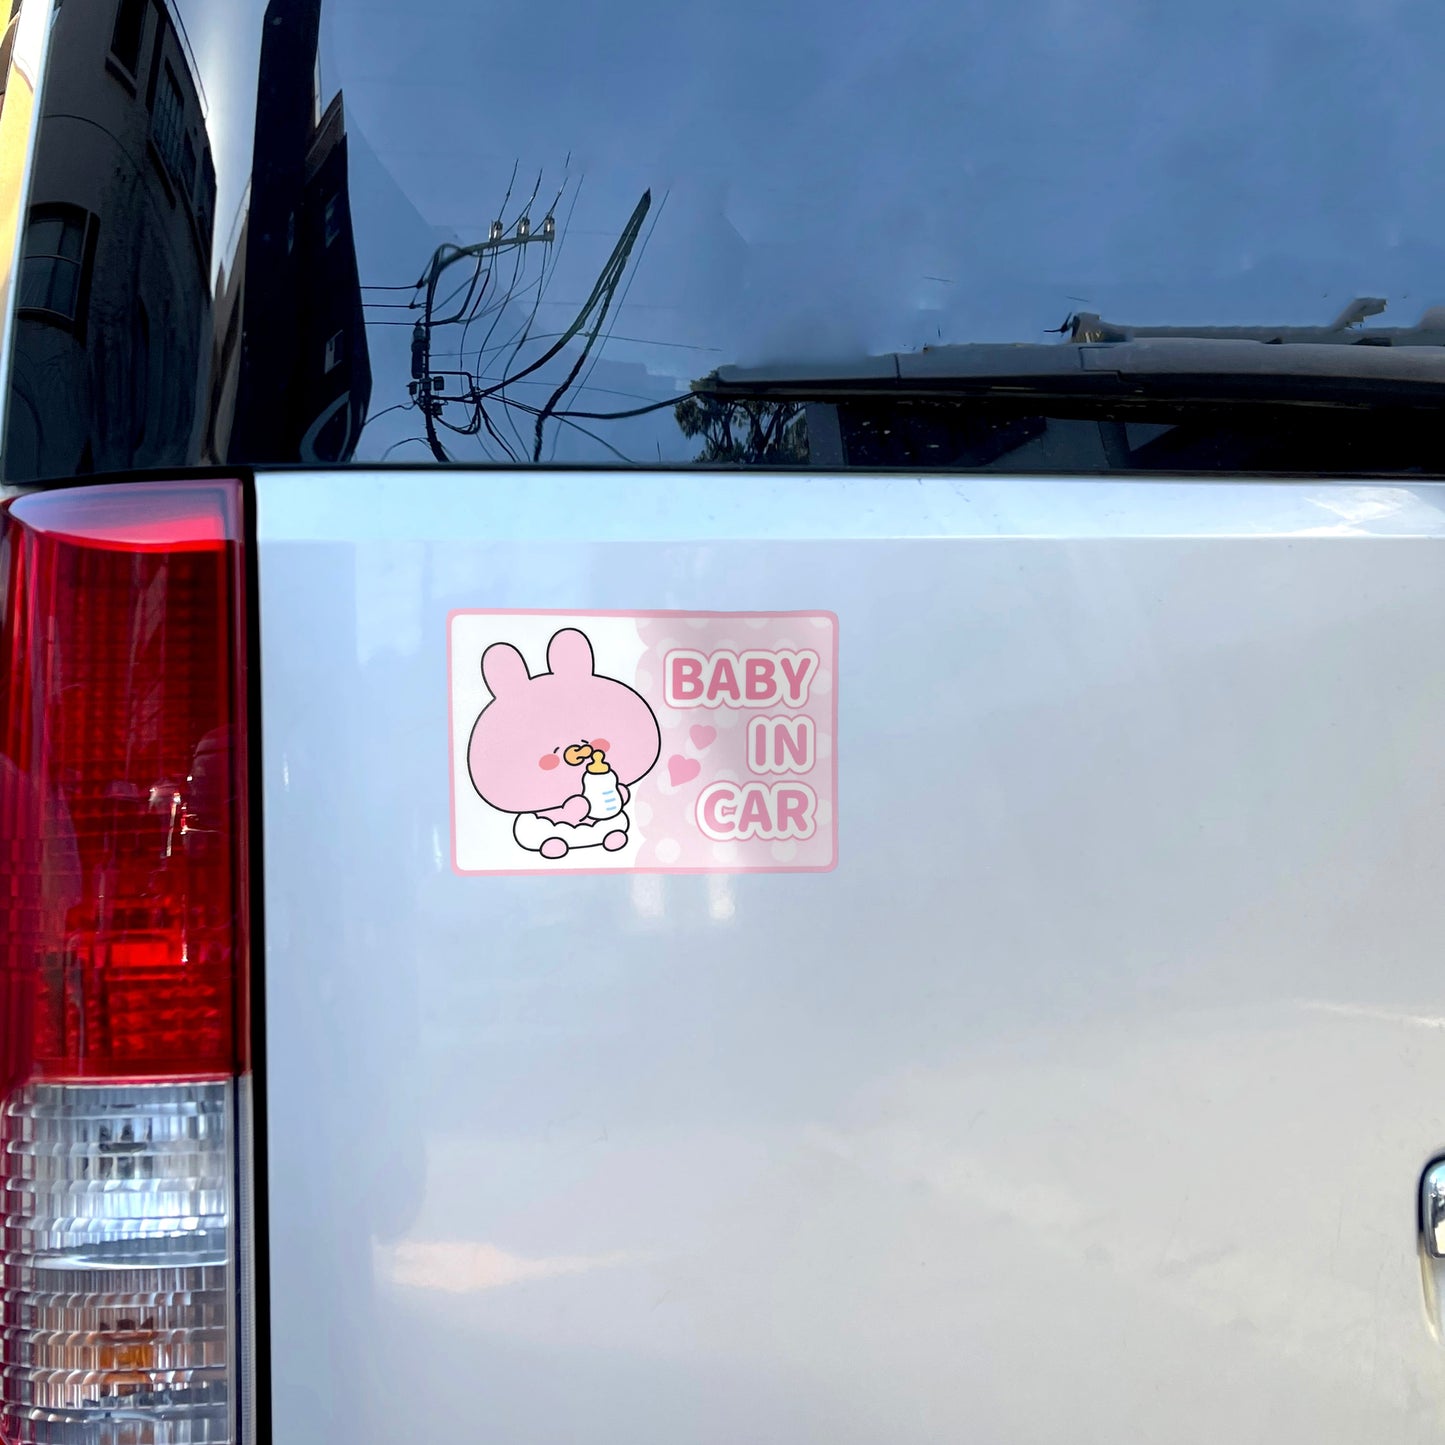 【あさみみちゃん】BABY IN CAR ステッカー（あなたをお守り！シリーズ）【3月中旬発送】